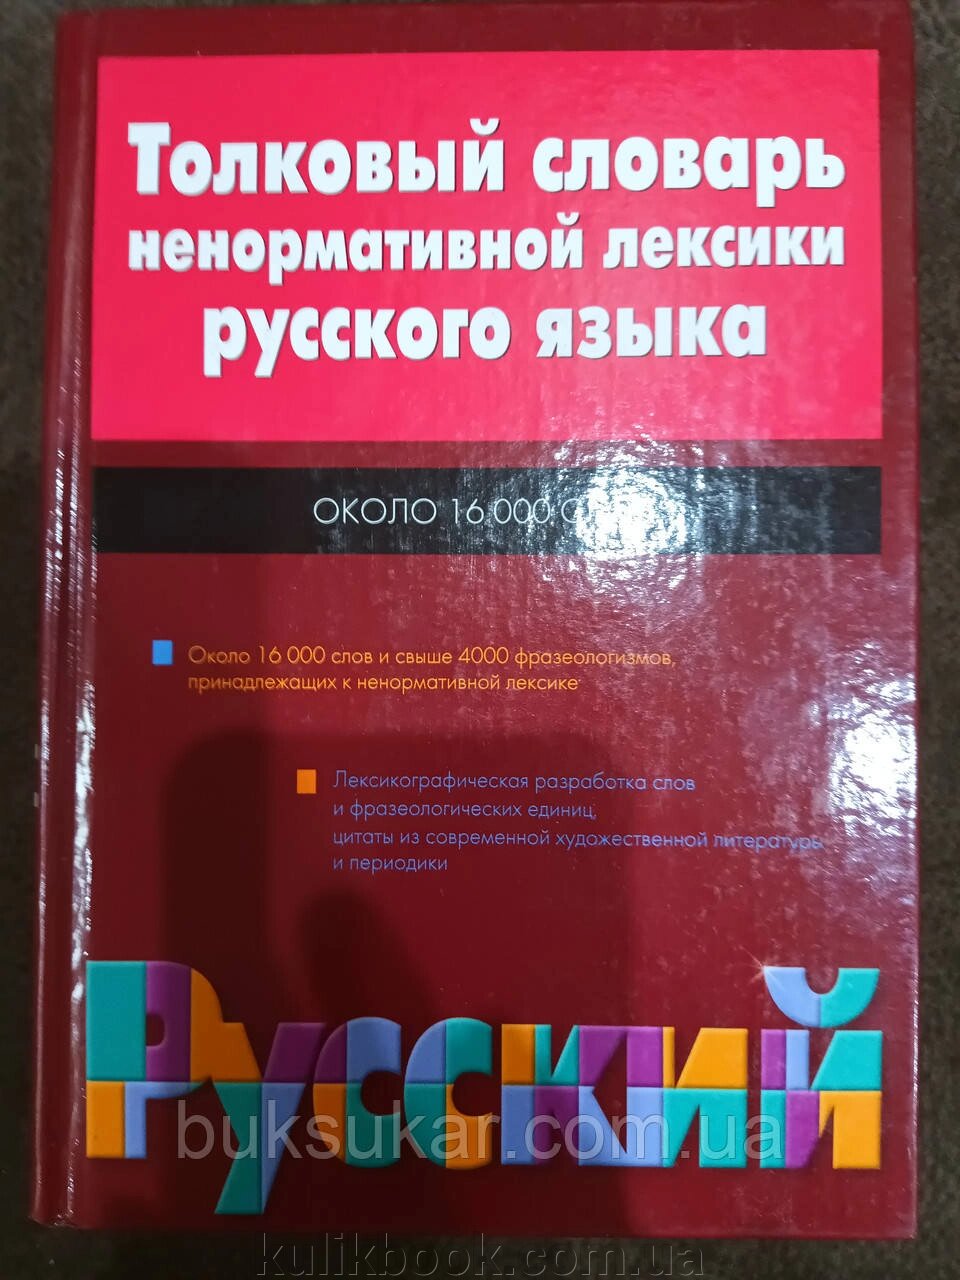 Тлумачний словник ненормативної лексики російської від компанії Буксукар - фото 1